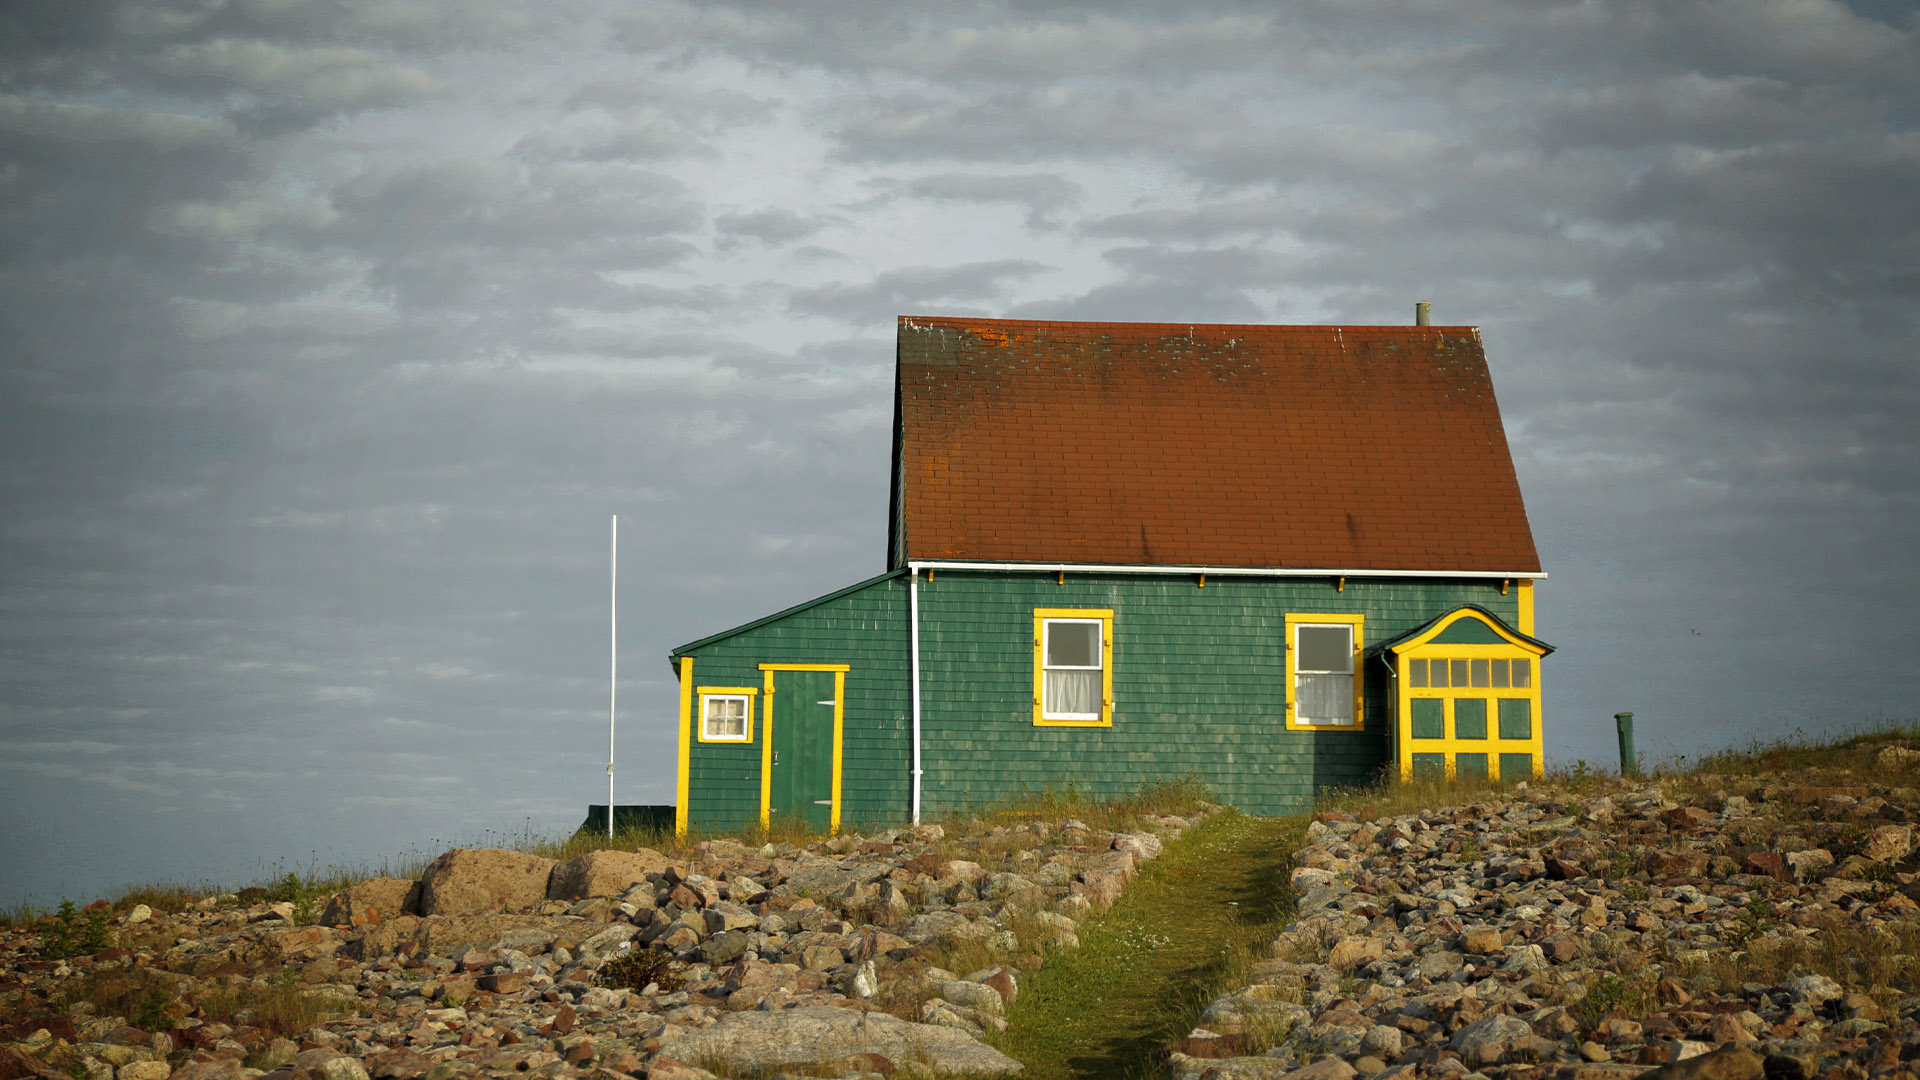 St. Pierre and Miquelon